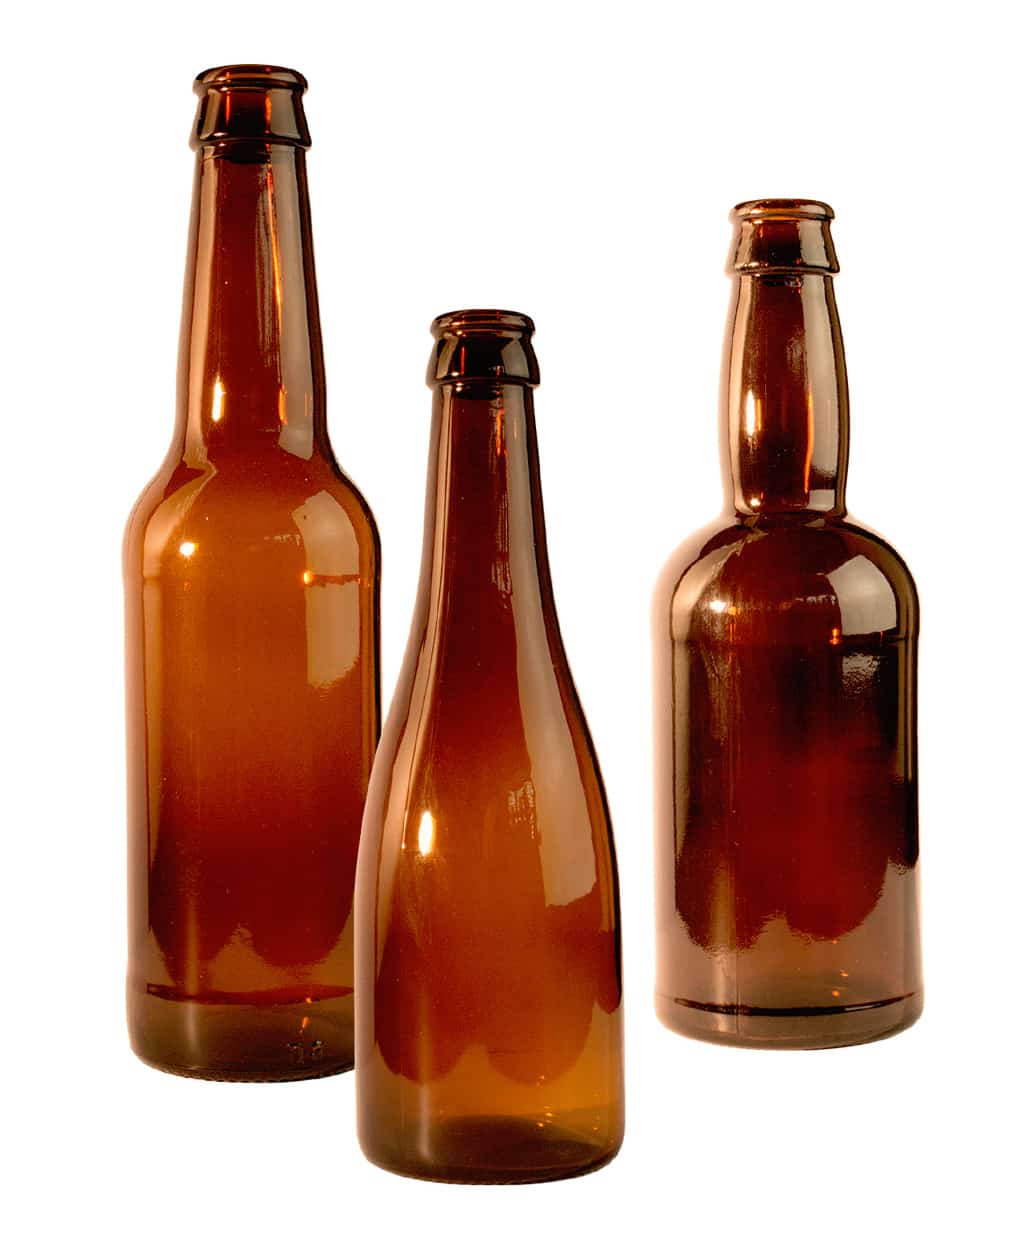 Bouteilles de bière 33 cl réutilisables avec tôle incluse Kit 20 bouteilles et 200 tôles pour réaliser des bières artisanales Pack de bouteille Fabrication artisanale à la maison 